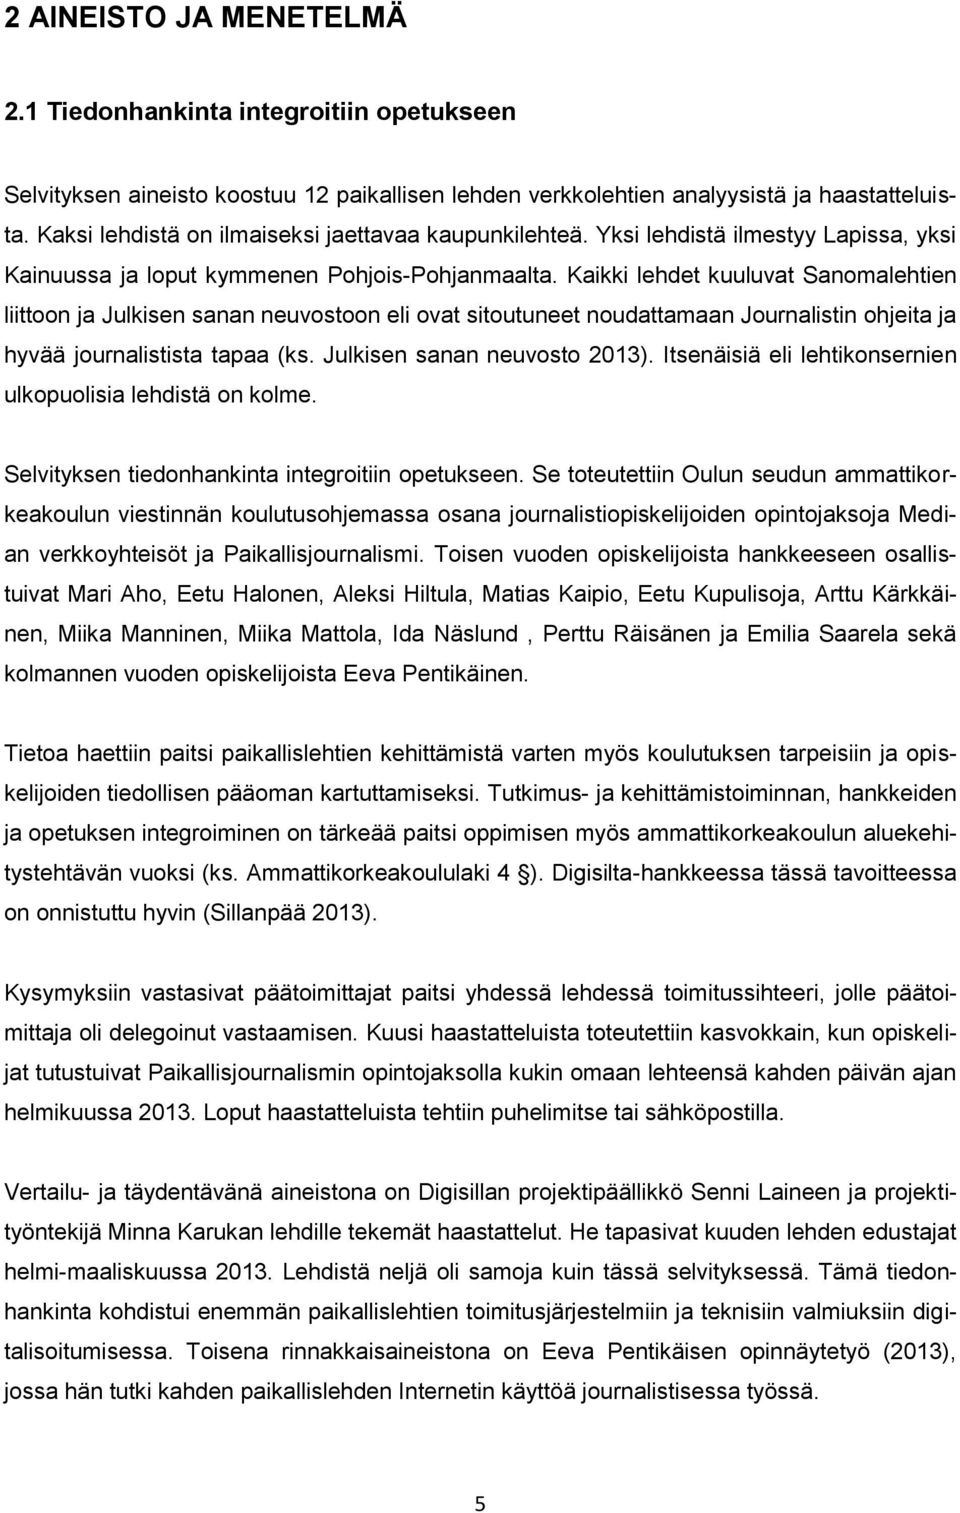 Kaikki lehdet kuuluvat Sanomalehtien liittoon ja Julkisen sanan neuvostoon eli ovat sitoutuneet noudattamaan Journalistin ohjeita ja hyvää journalistista tapaa (ks. Julkisen sanan neuvosto 2013).